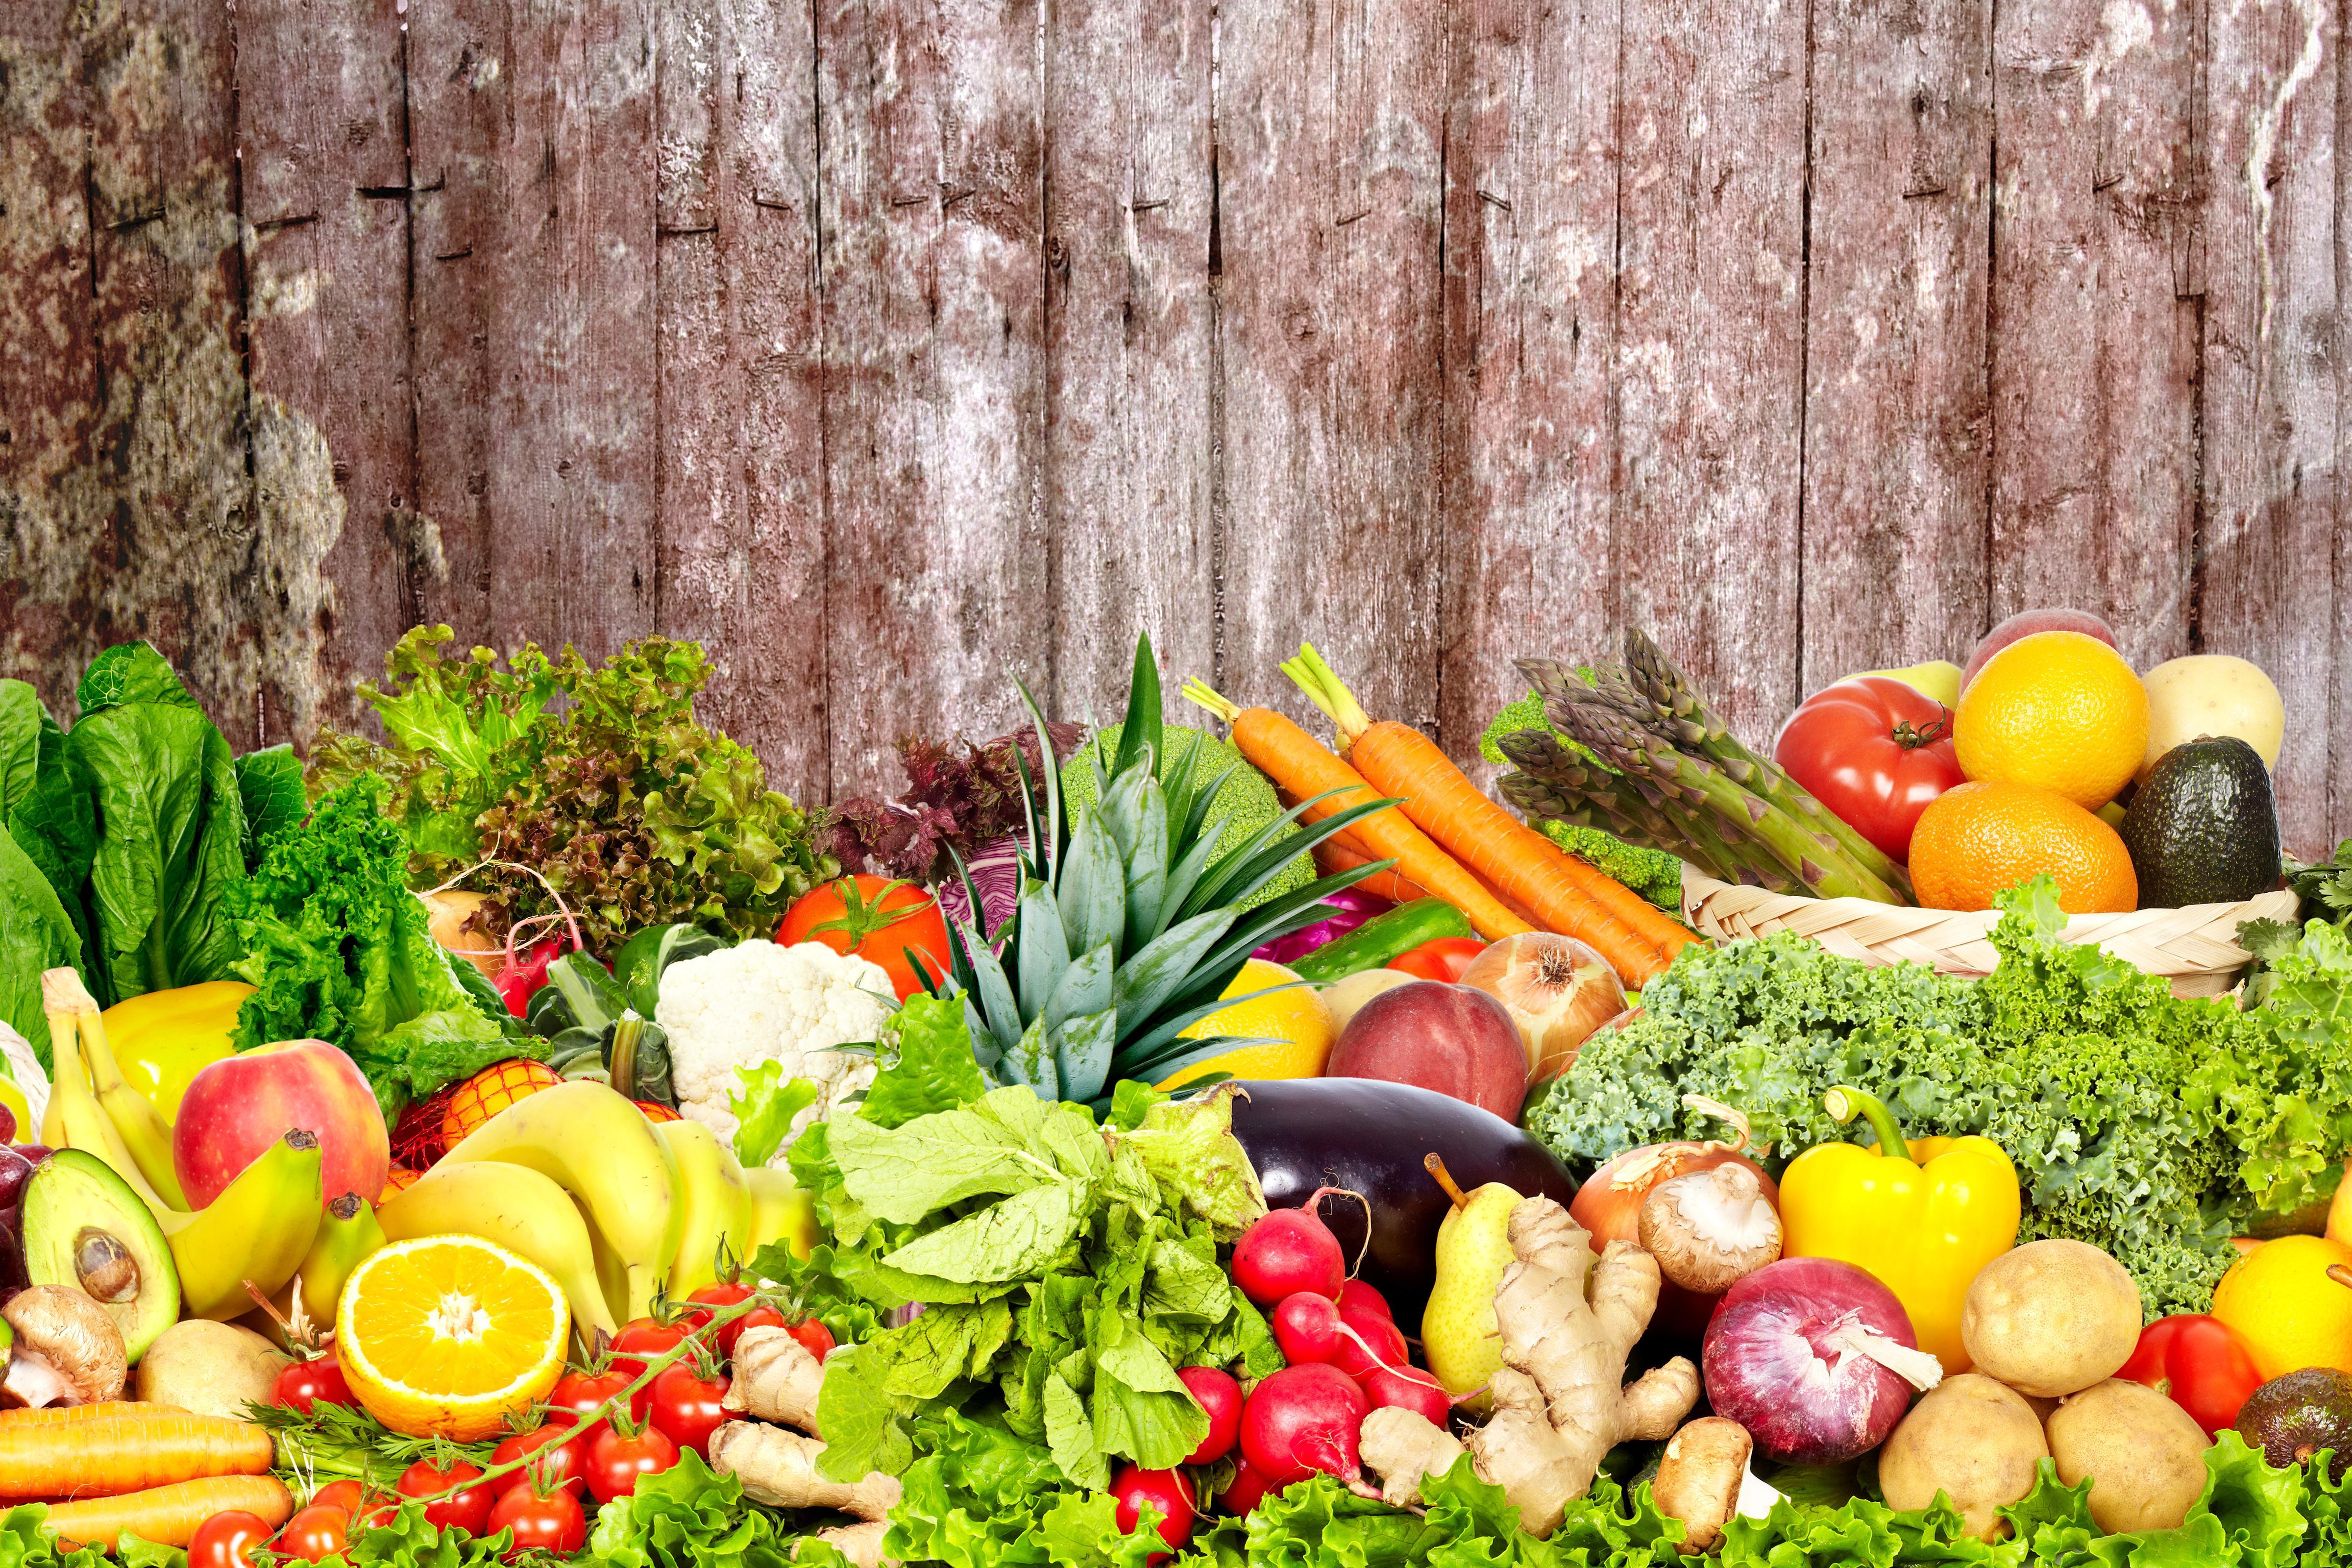 Fruits & Vegetables 4k Ultra HD Wallpaper. Background Image